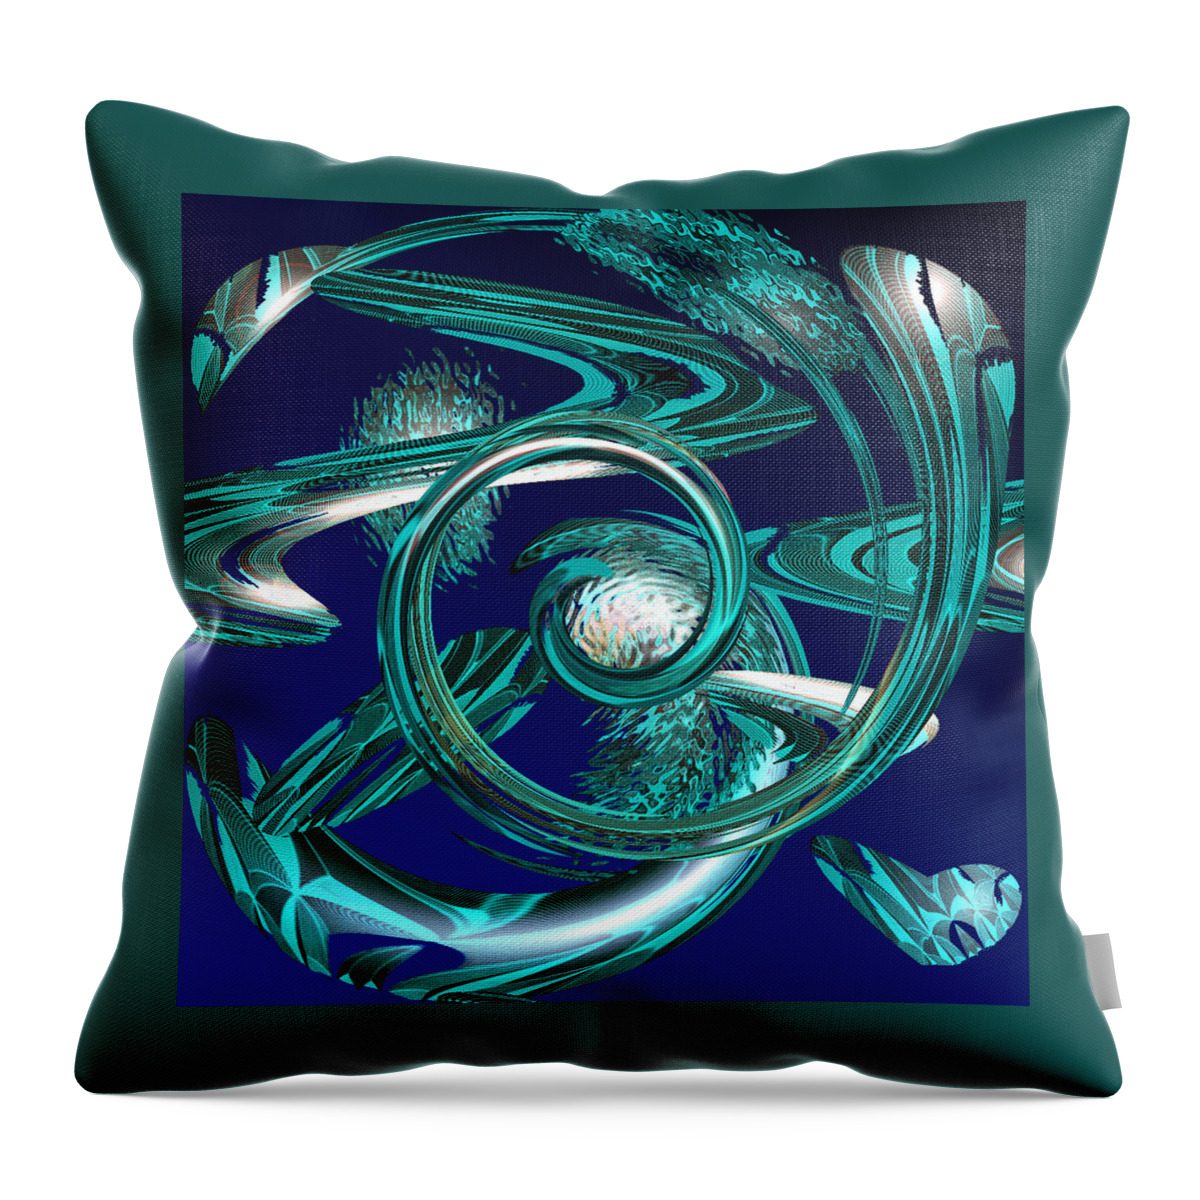 Digital Wall Art Throw Pillow featuring the digital art Snakes Swirl Blue by Ronald Mills